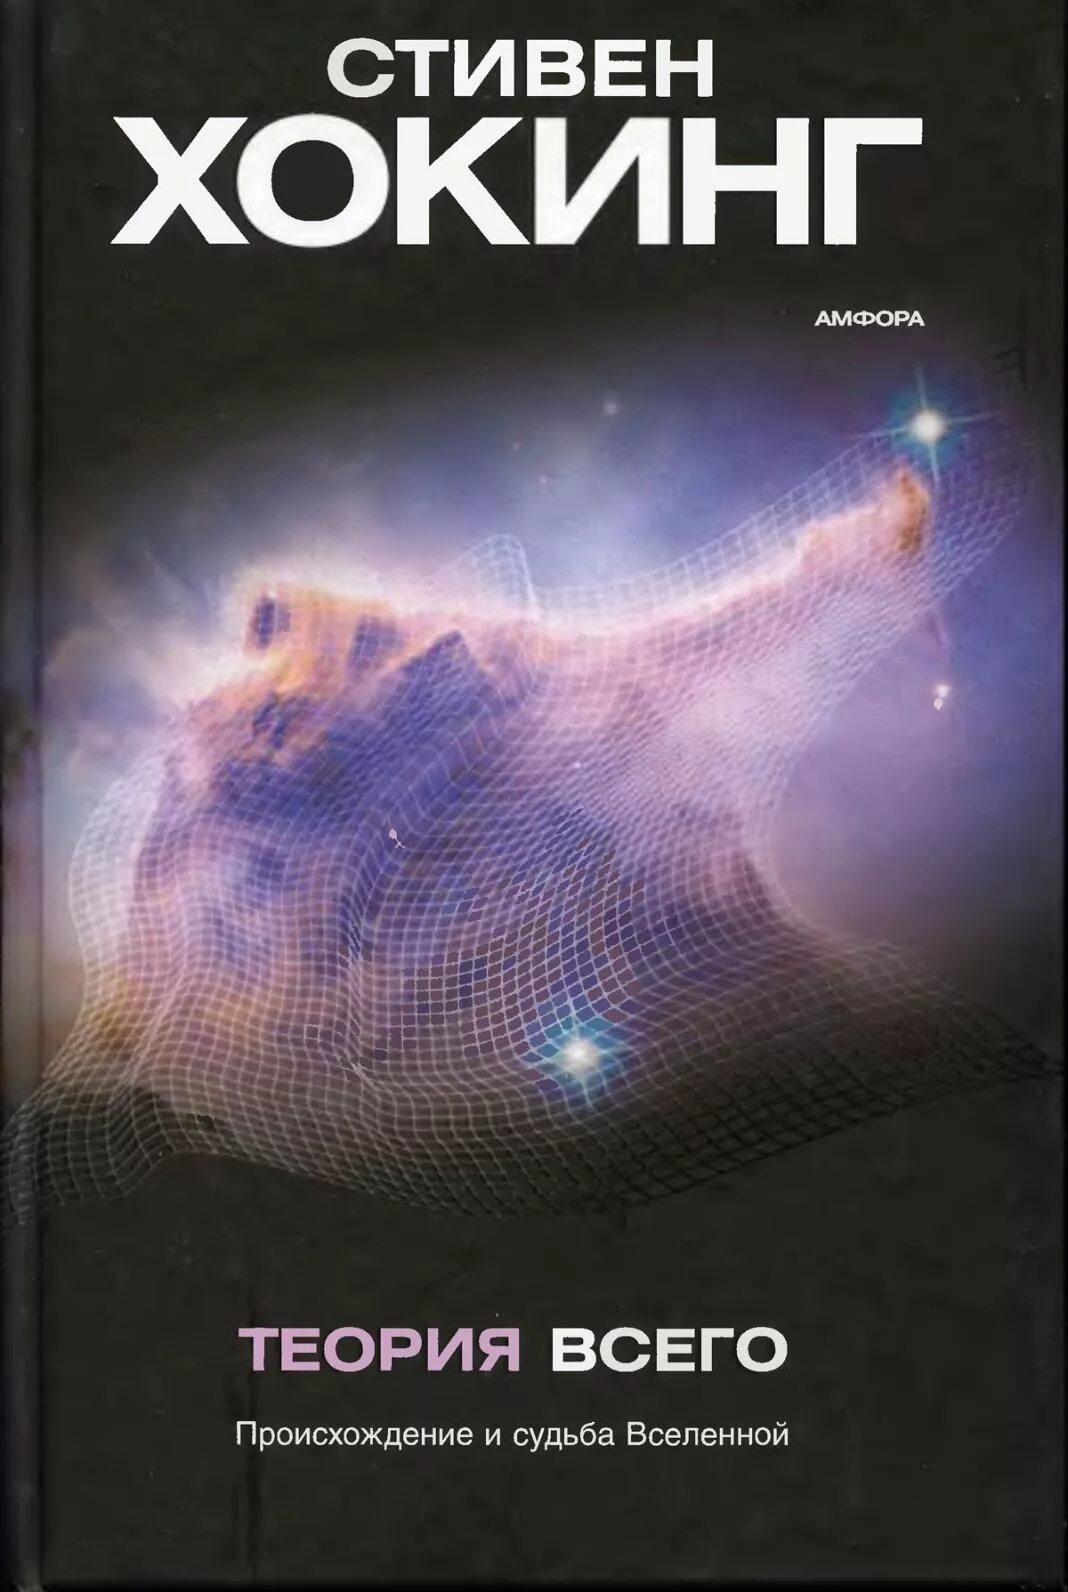 Новая теория всего. Теория Стивена Хокинга о Вселенной книга. Теория сингулярности Стивена Хокинга.